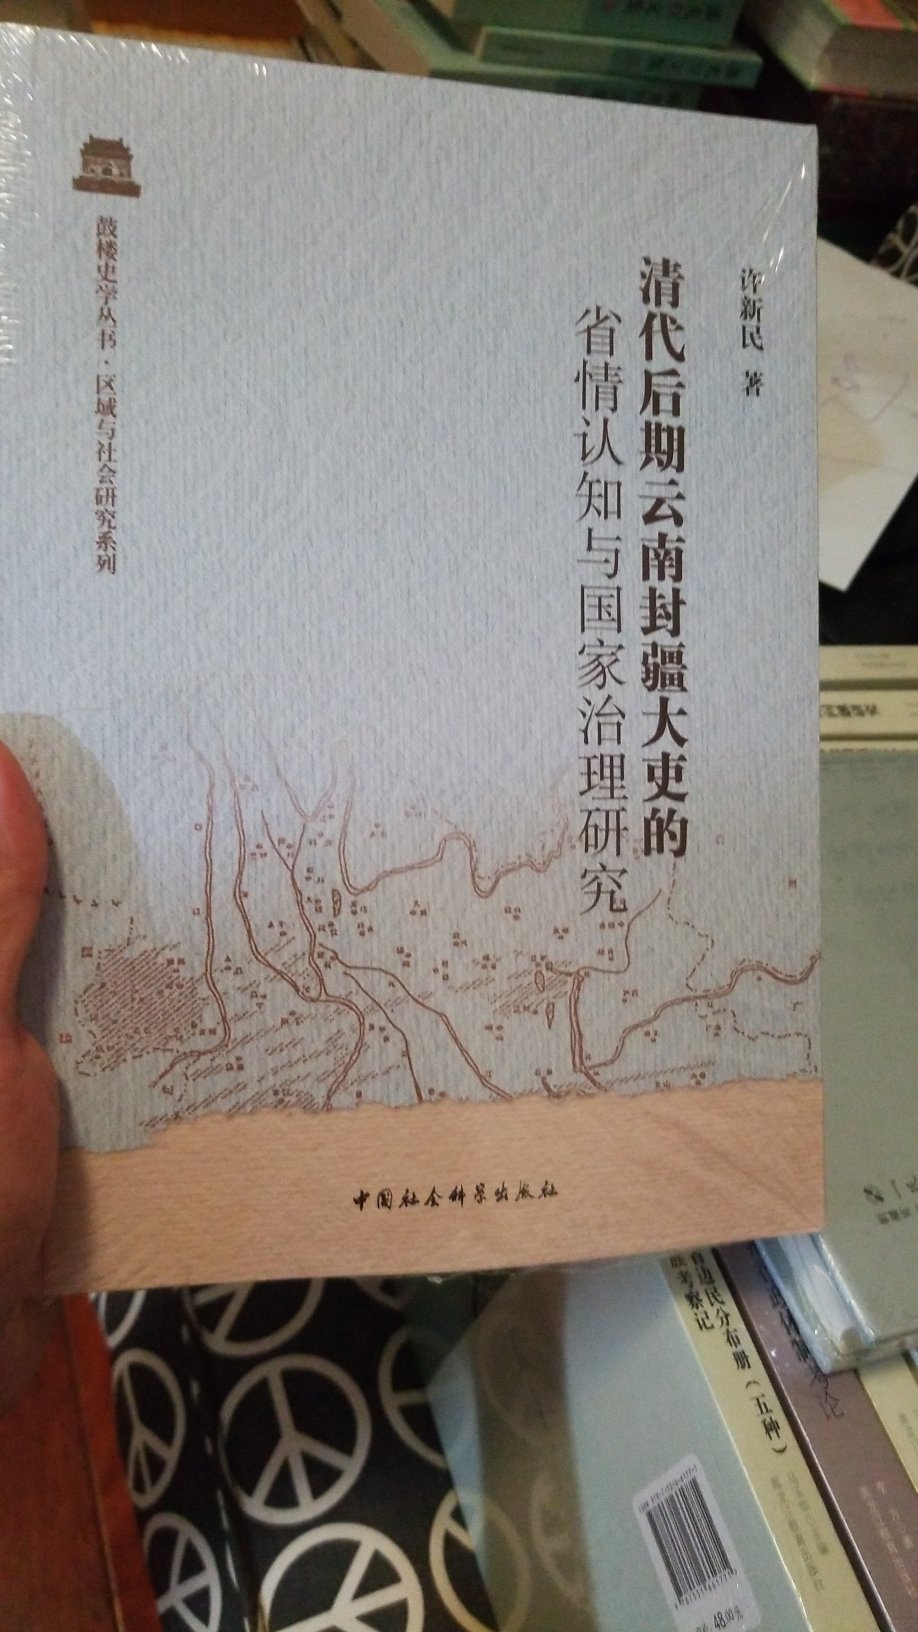 可以和黑龙江教育出版社的边疆研究丛书的云南系列结合起来看。我买了很多云南系列。就是为了知道60年边界条约到底割了多少实控区？！